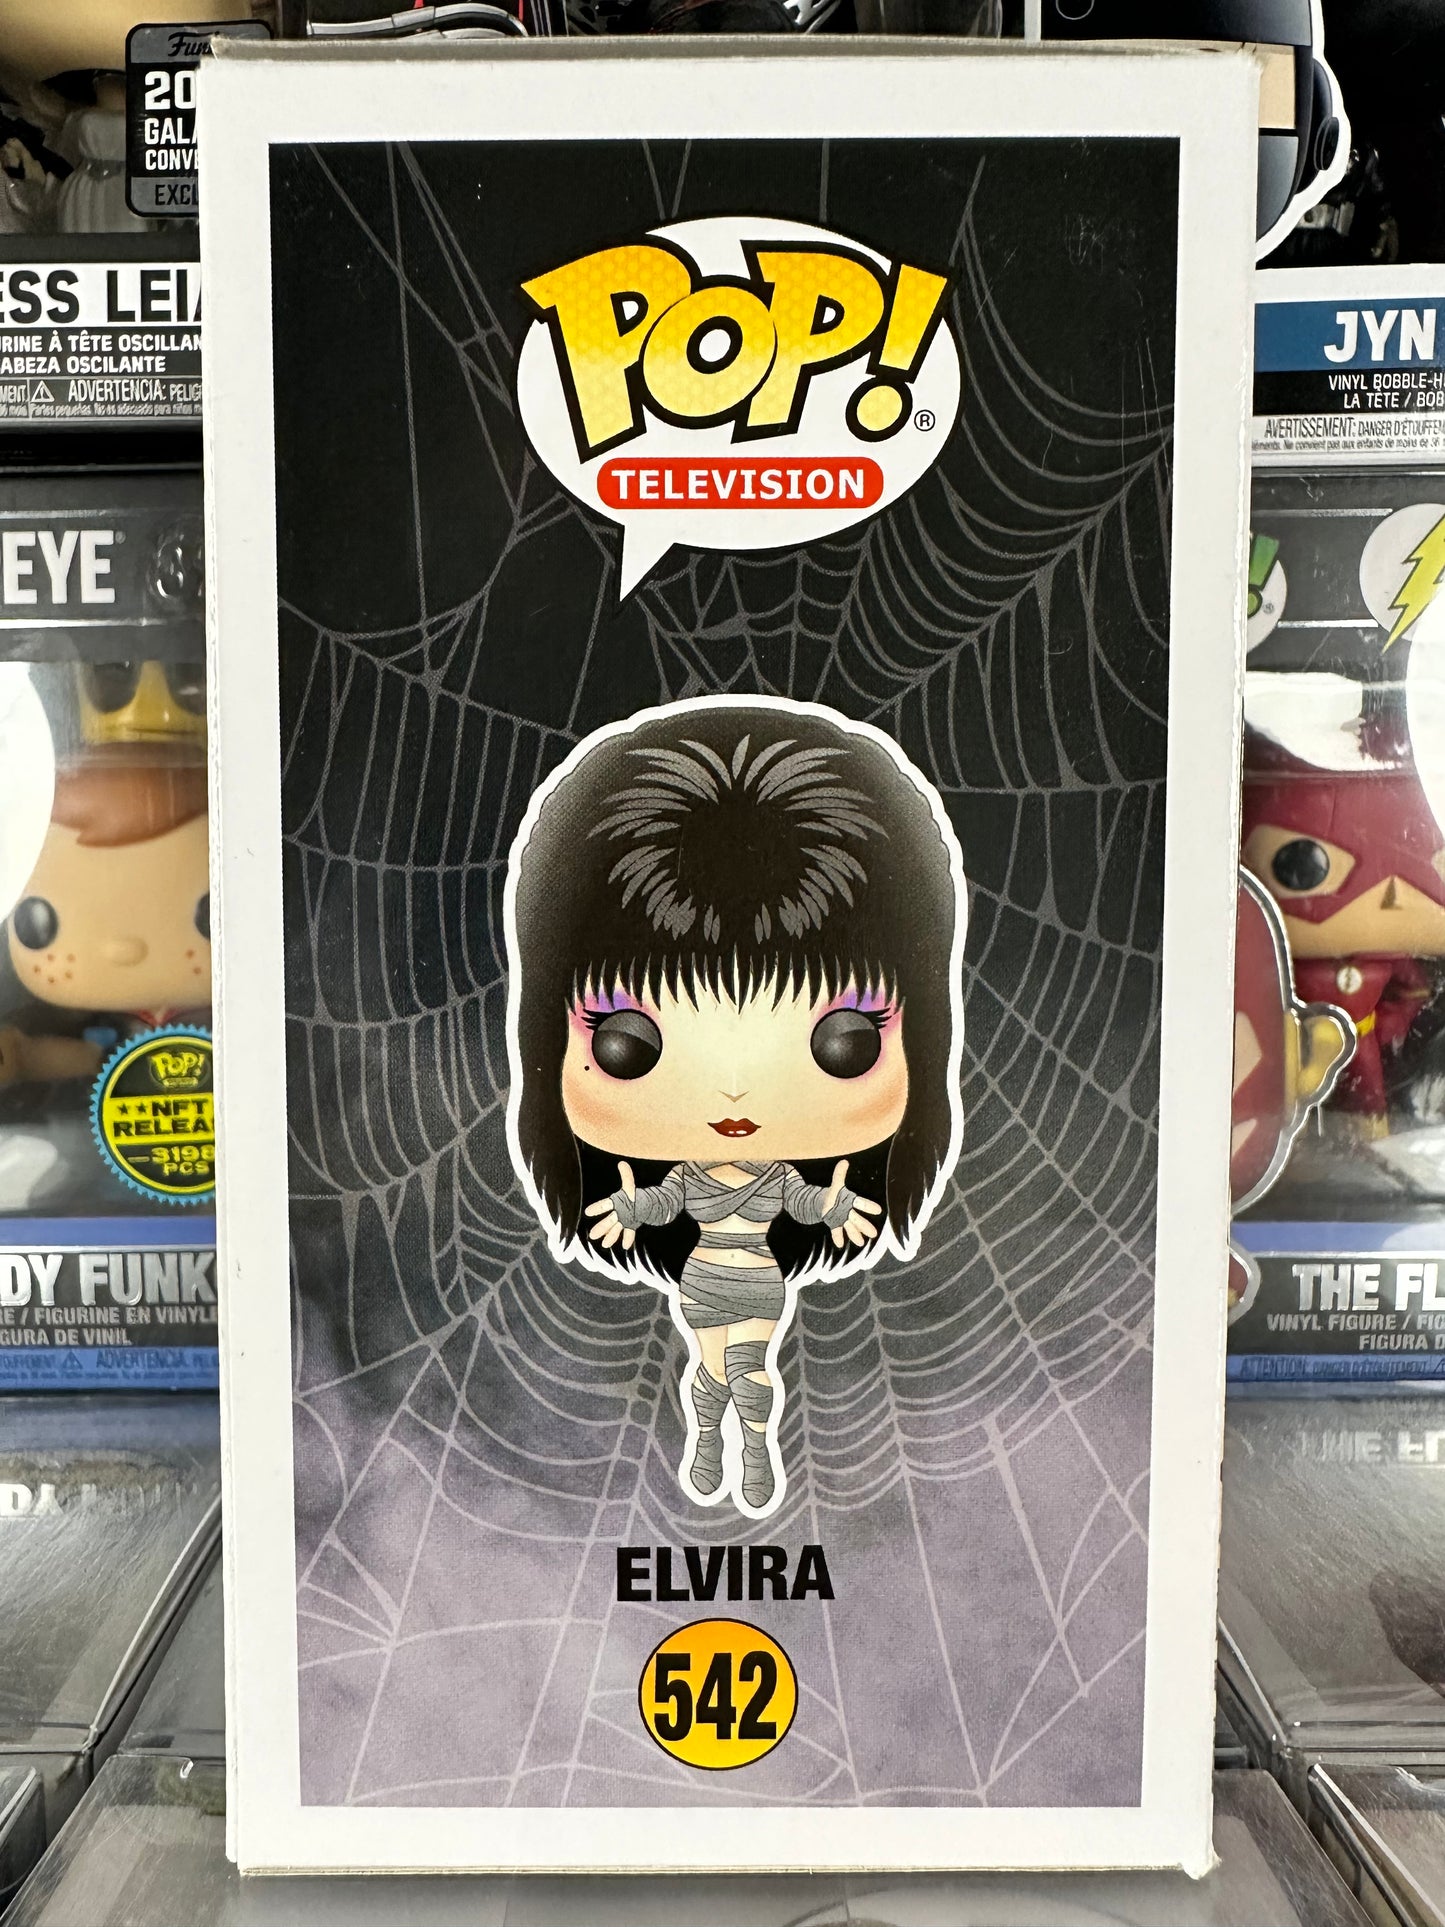 Elvira - Elvira (542) Vaulted